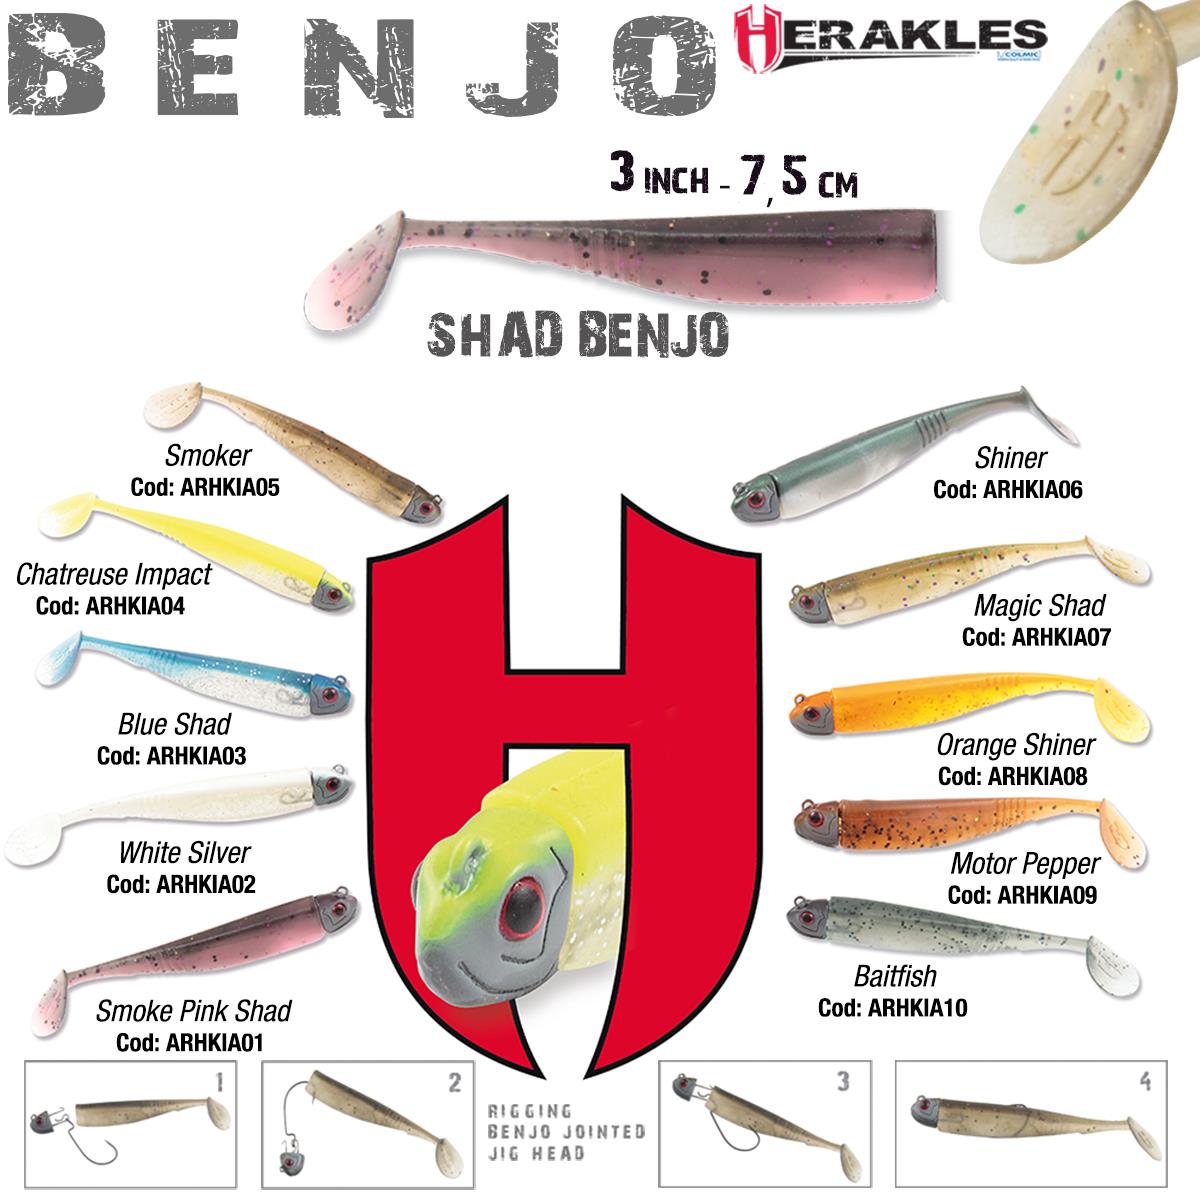 SHAD BENJO 3 7.5cm ORANGE SHINER